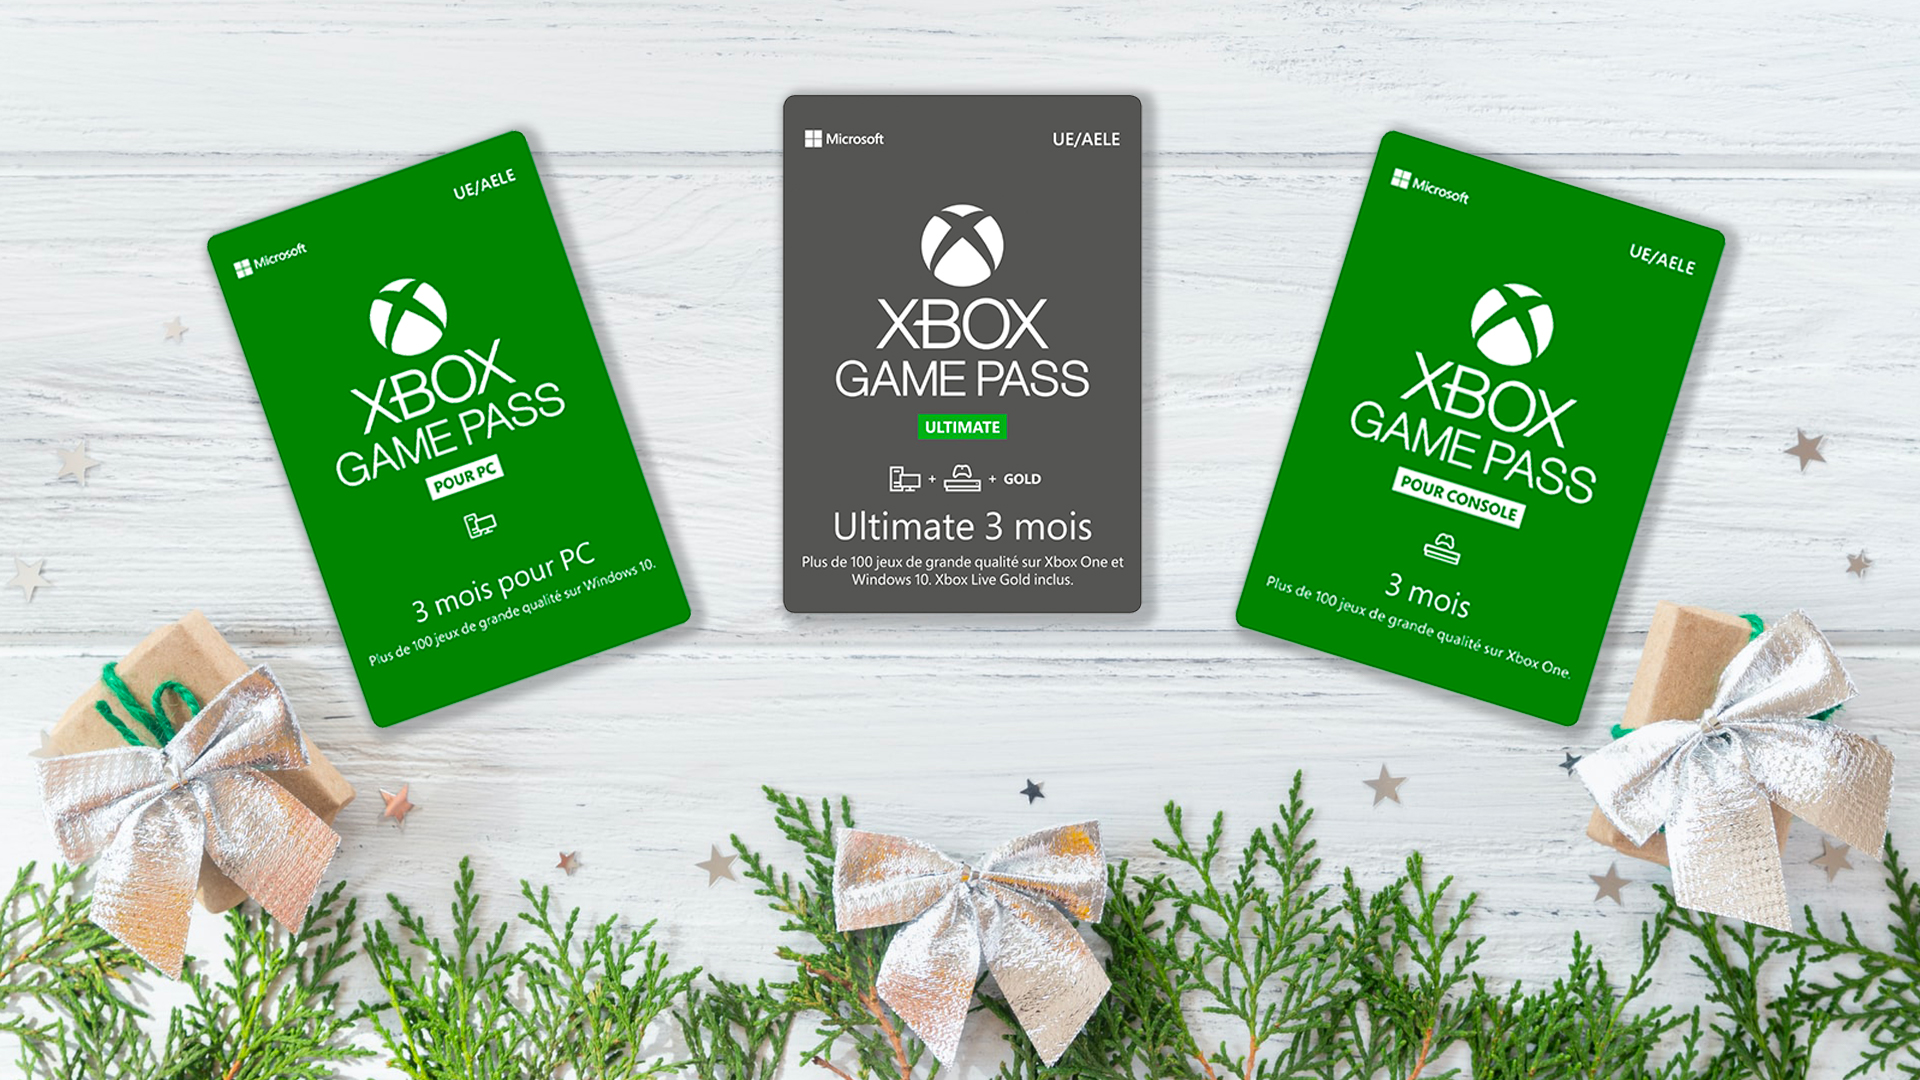 Carte Cadeau Xbox Game Pass : Xbox Game Pass carte cadeau